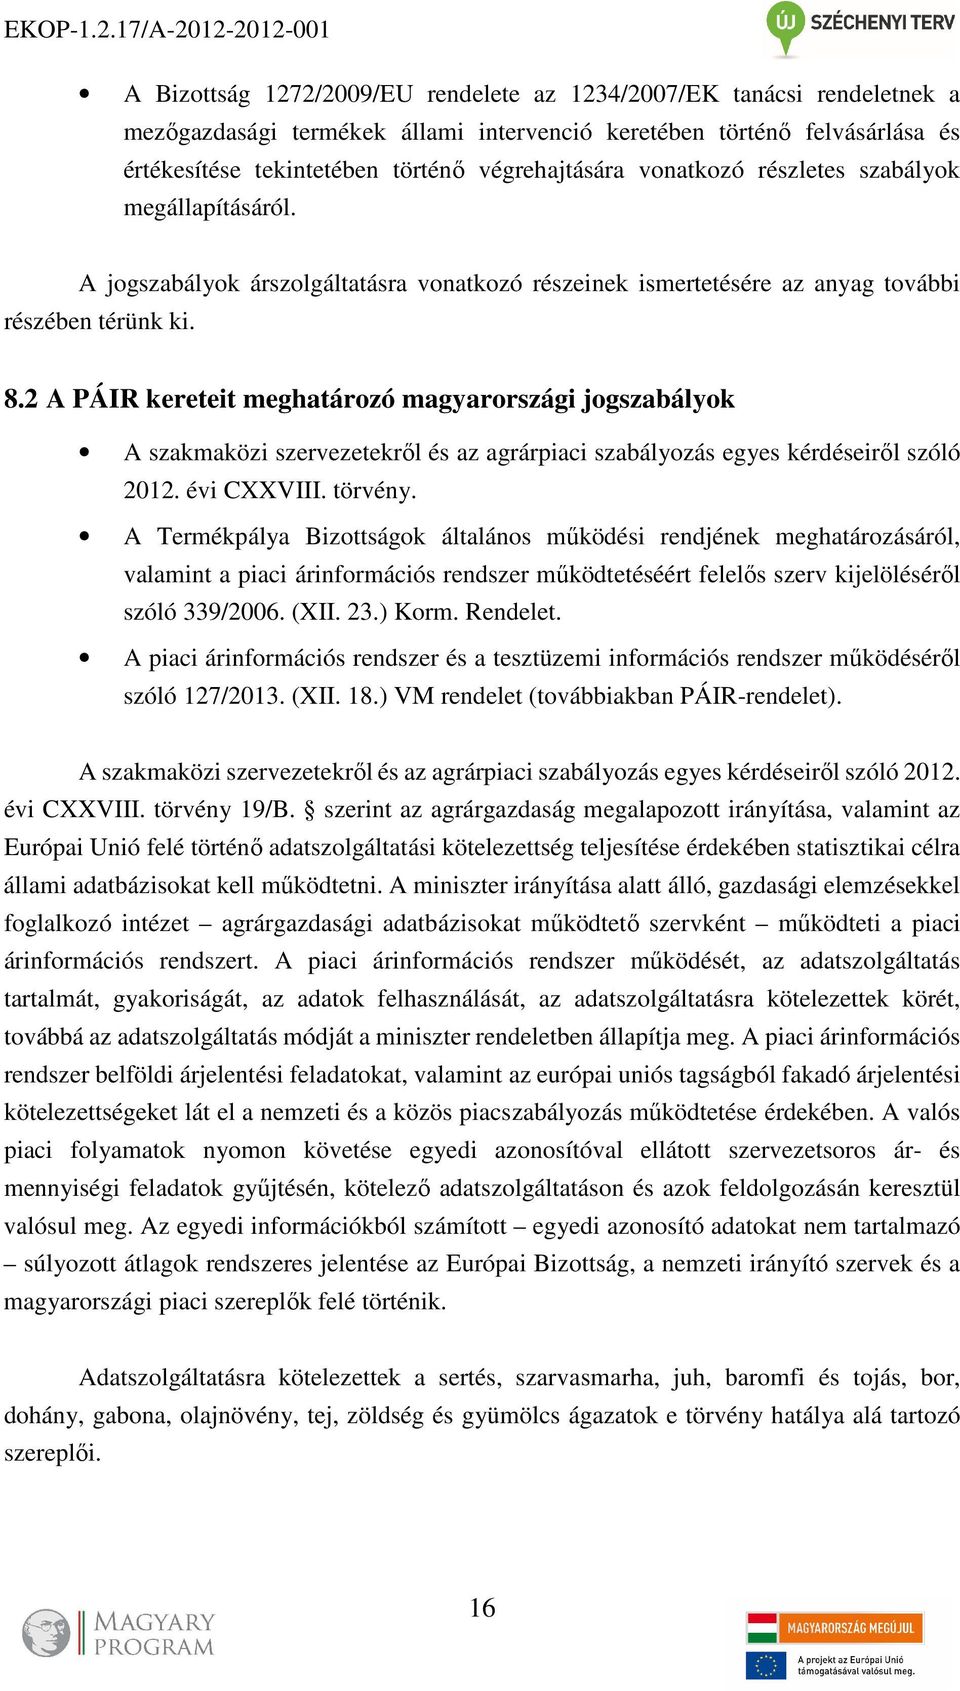 2 A PÁIR kereteit meghatározó magyarországi jogszabályok A szakmaközi szervezetekről és az agrárpiaci szabályozás egyes kérdéseiről szóló 2012. évi CXXVIII. törvény.